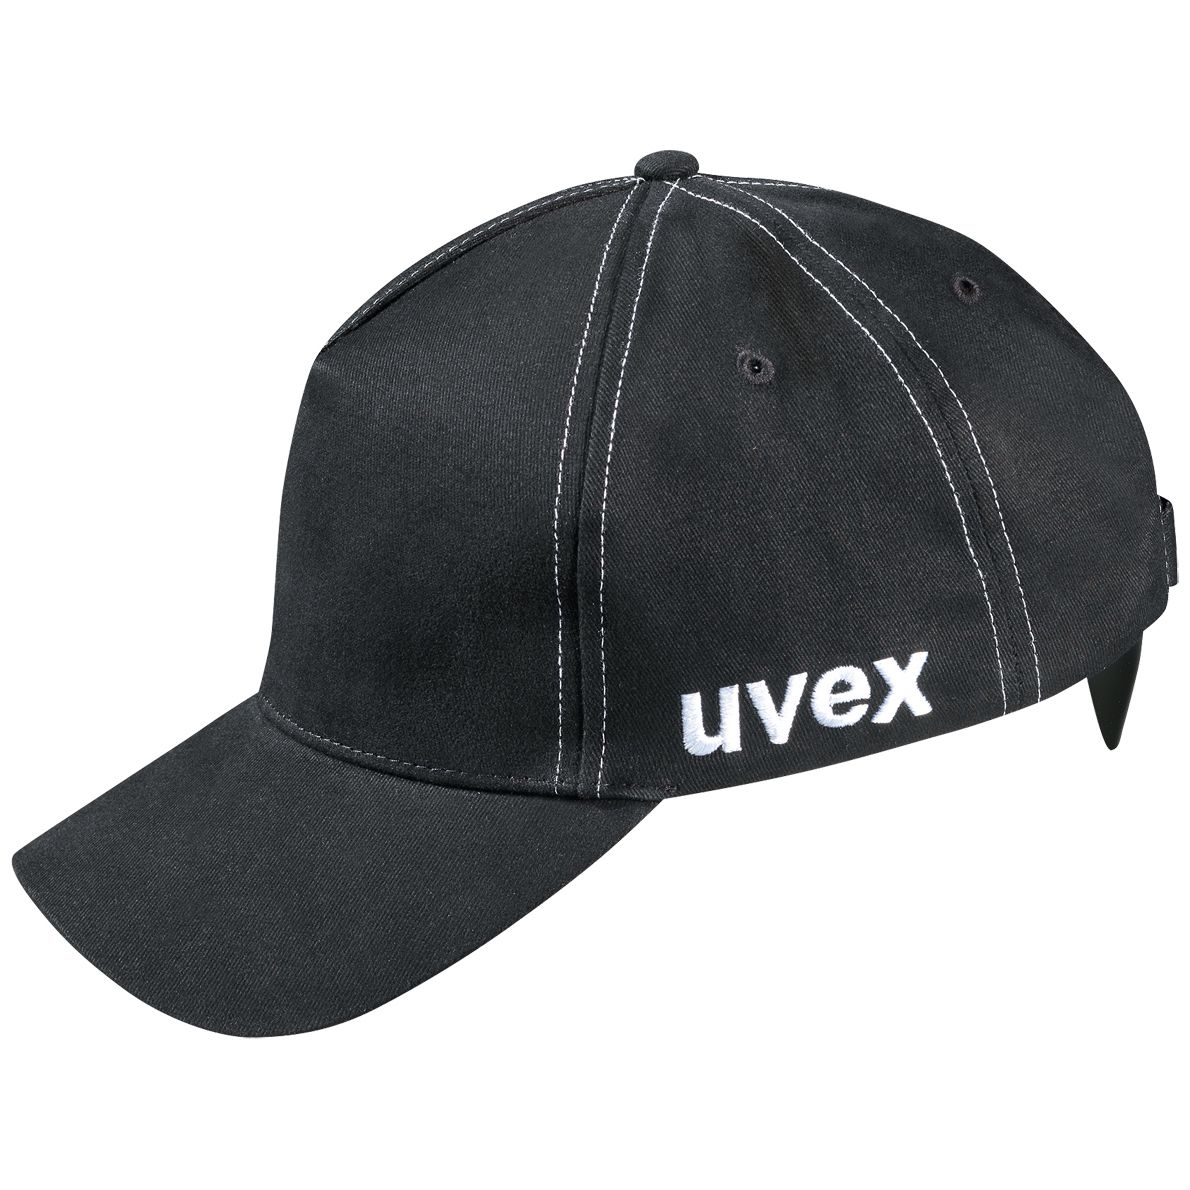 uvex u-cap sport Anstoßkappe - Schutzkappe mit langem Schirm - für Bau & Industrie - EN 812 - Schwarz - 60 bis 63 cm